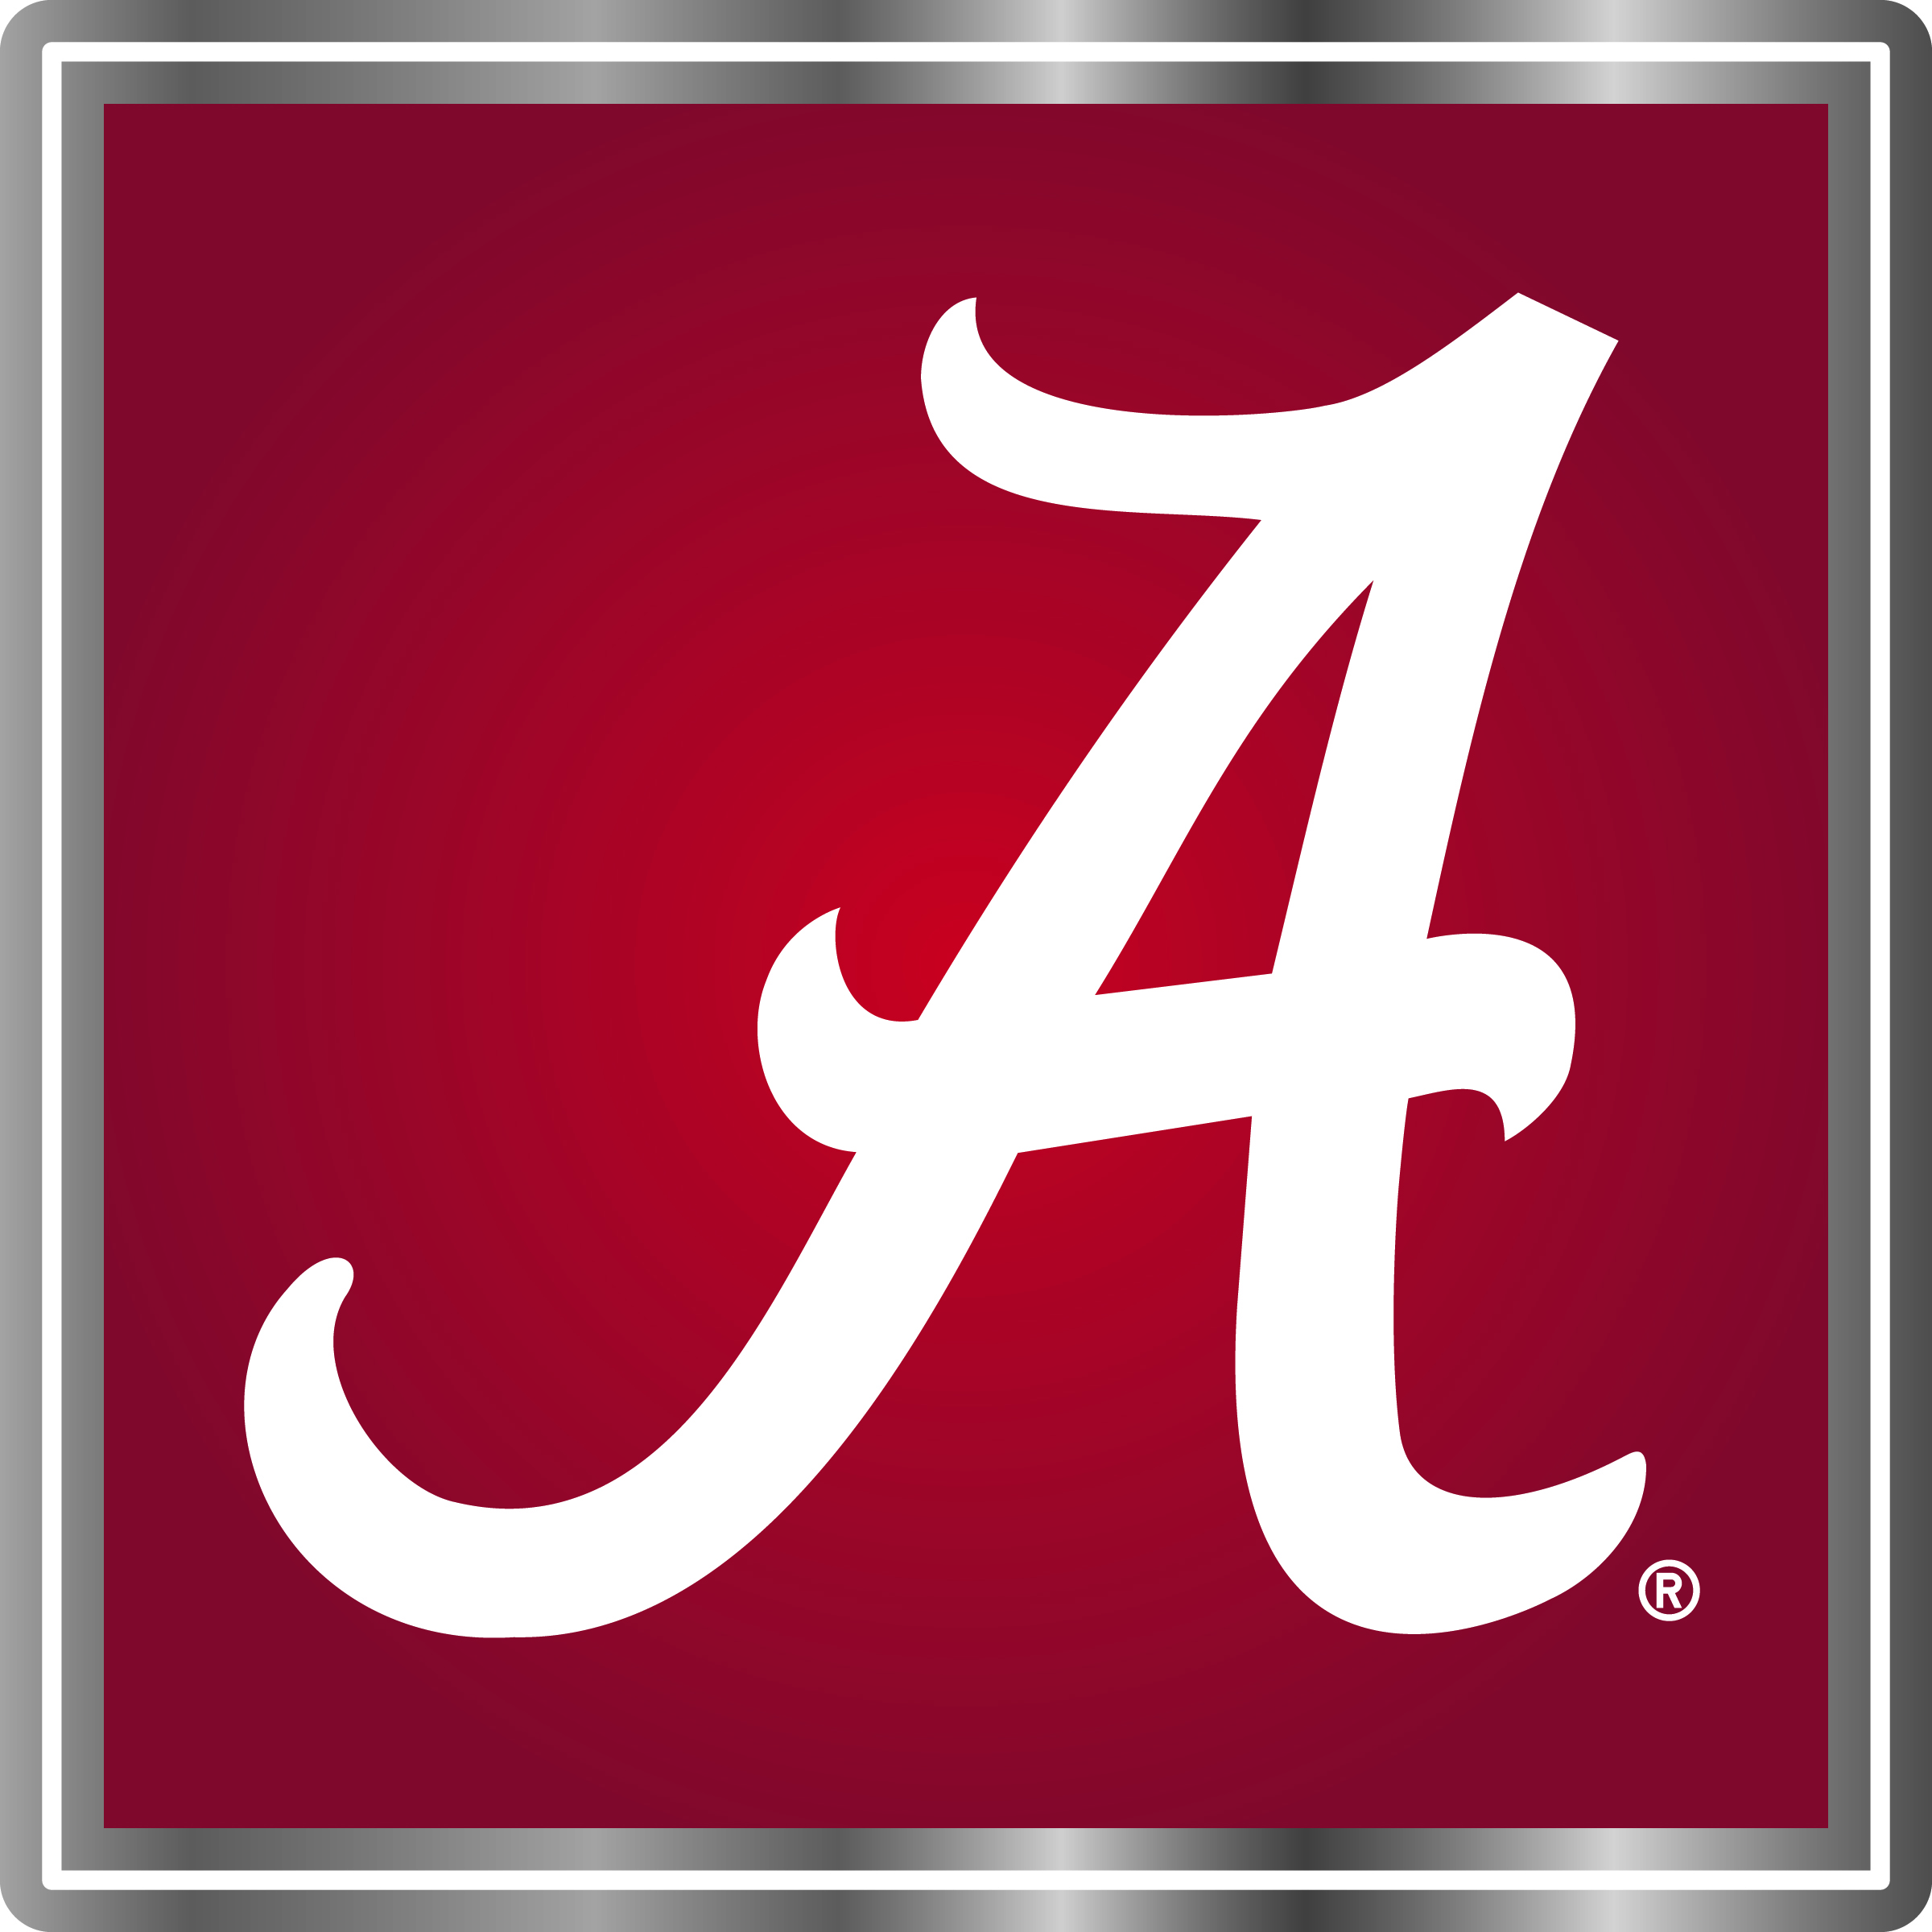 The University of Alabama, Founded 1831